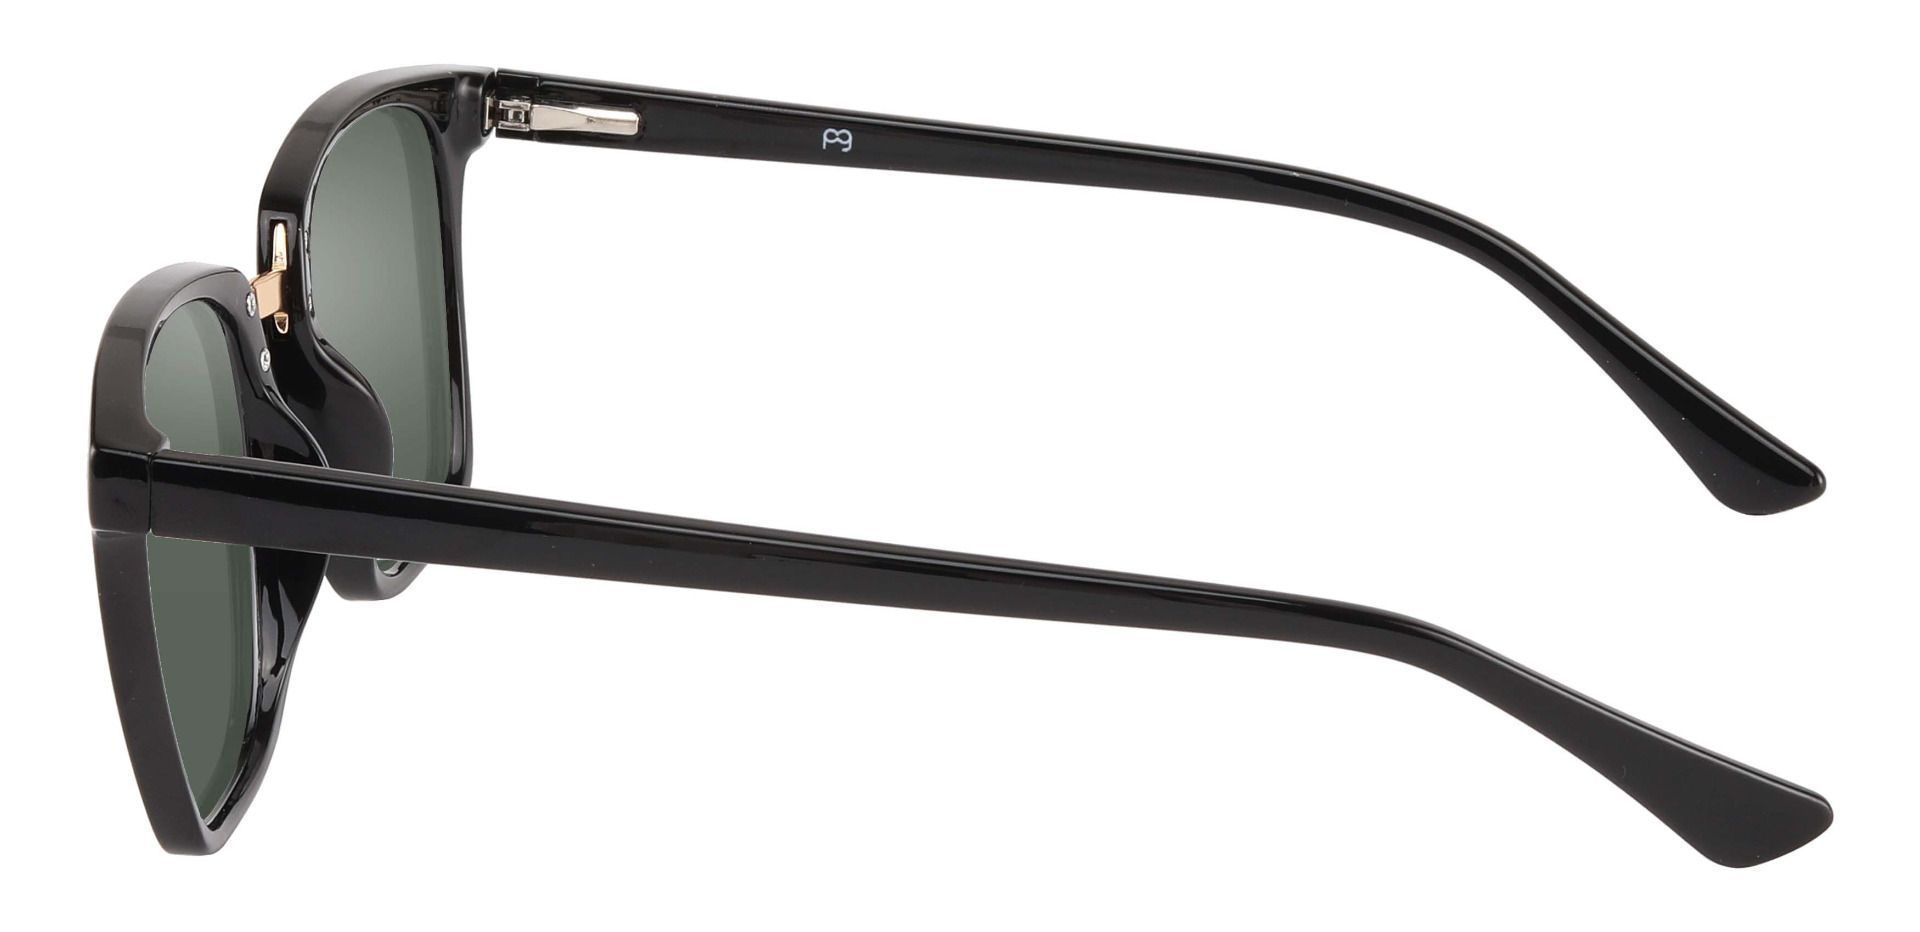 Delta Square Prescription Sunglasses - Black Frame With Green Lenses